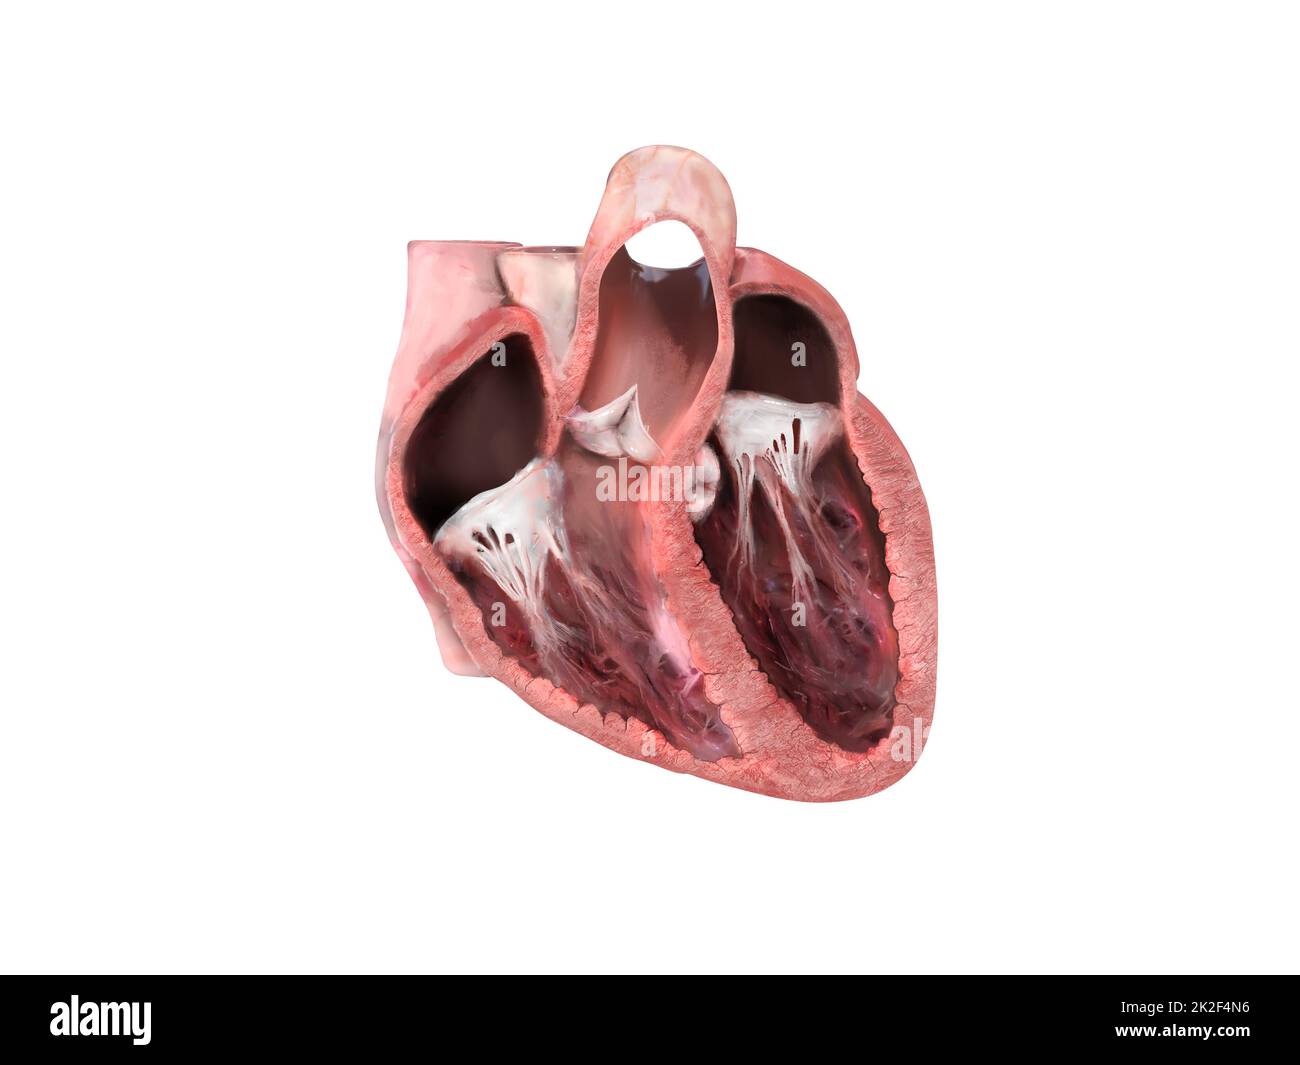 anatomia del cuore umano. Diagramma informativo che mostra il flusso sanguigno con le parti principali etichettate. sezione cardiaca anatomica, ventricolo destro e sinistro e setto, valvola cardiaca, attacco cardiaco, problemi cardiaci, rappresentazione 3d Foto Stock